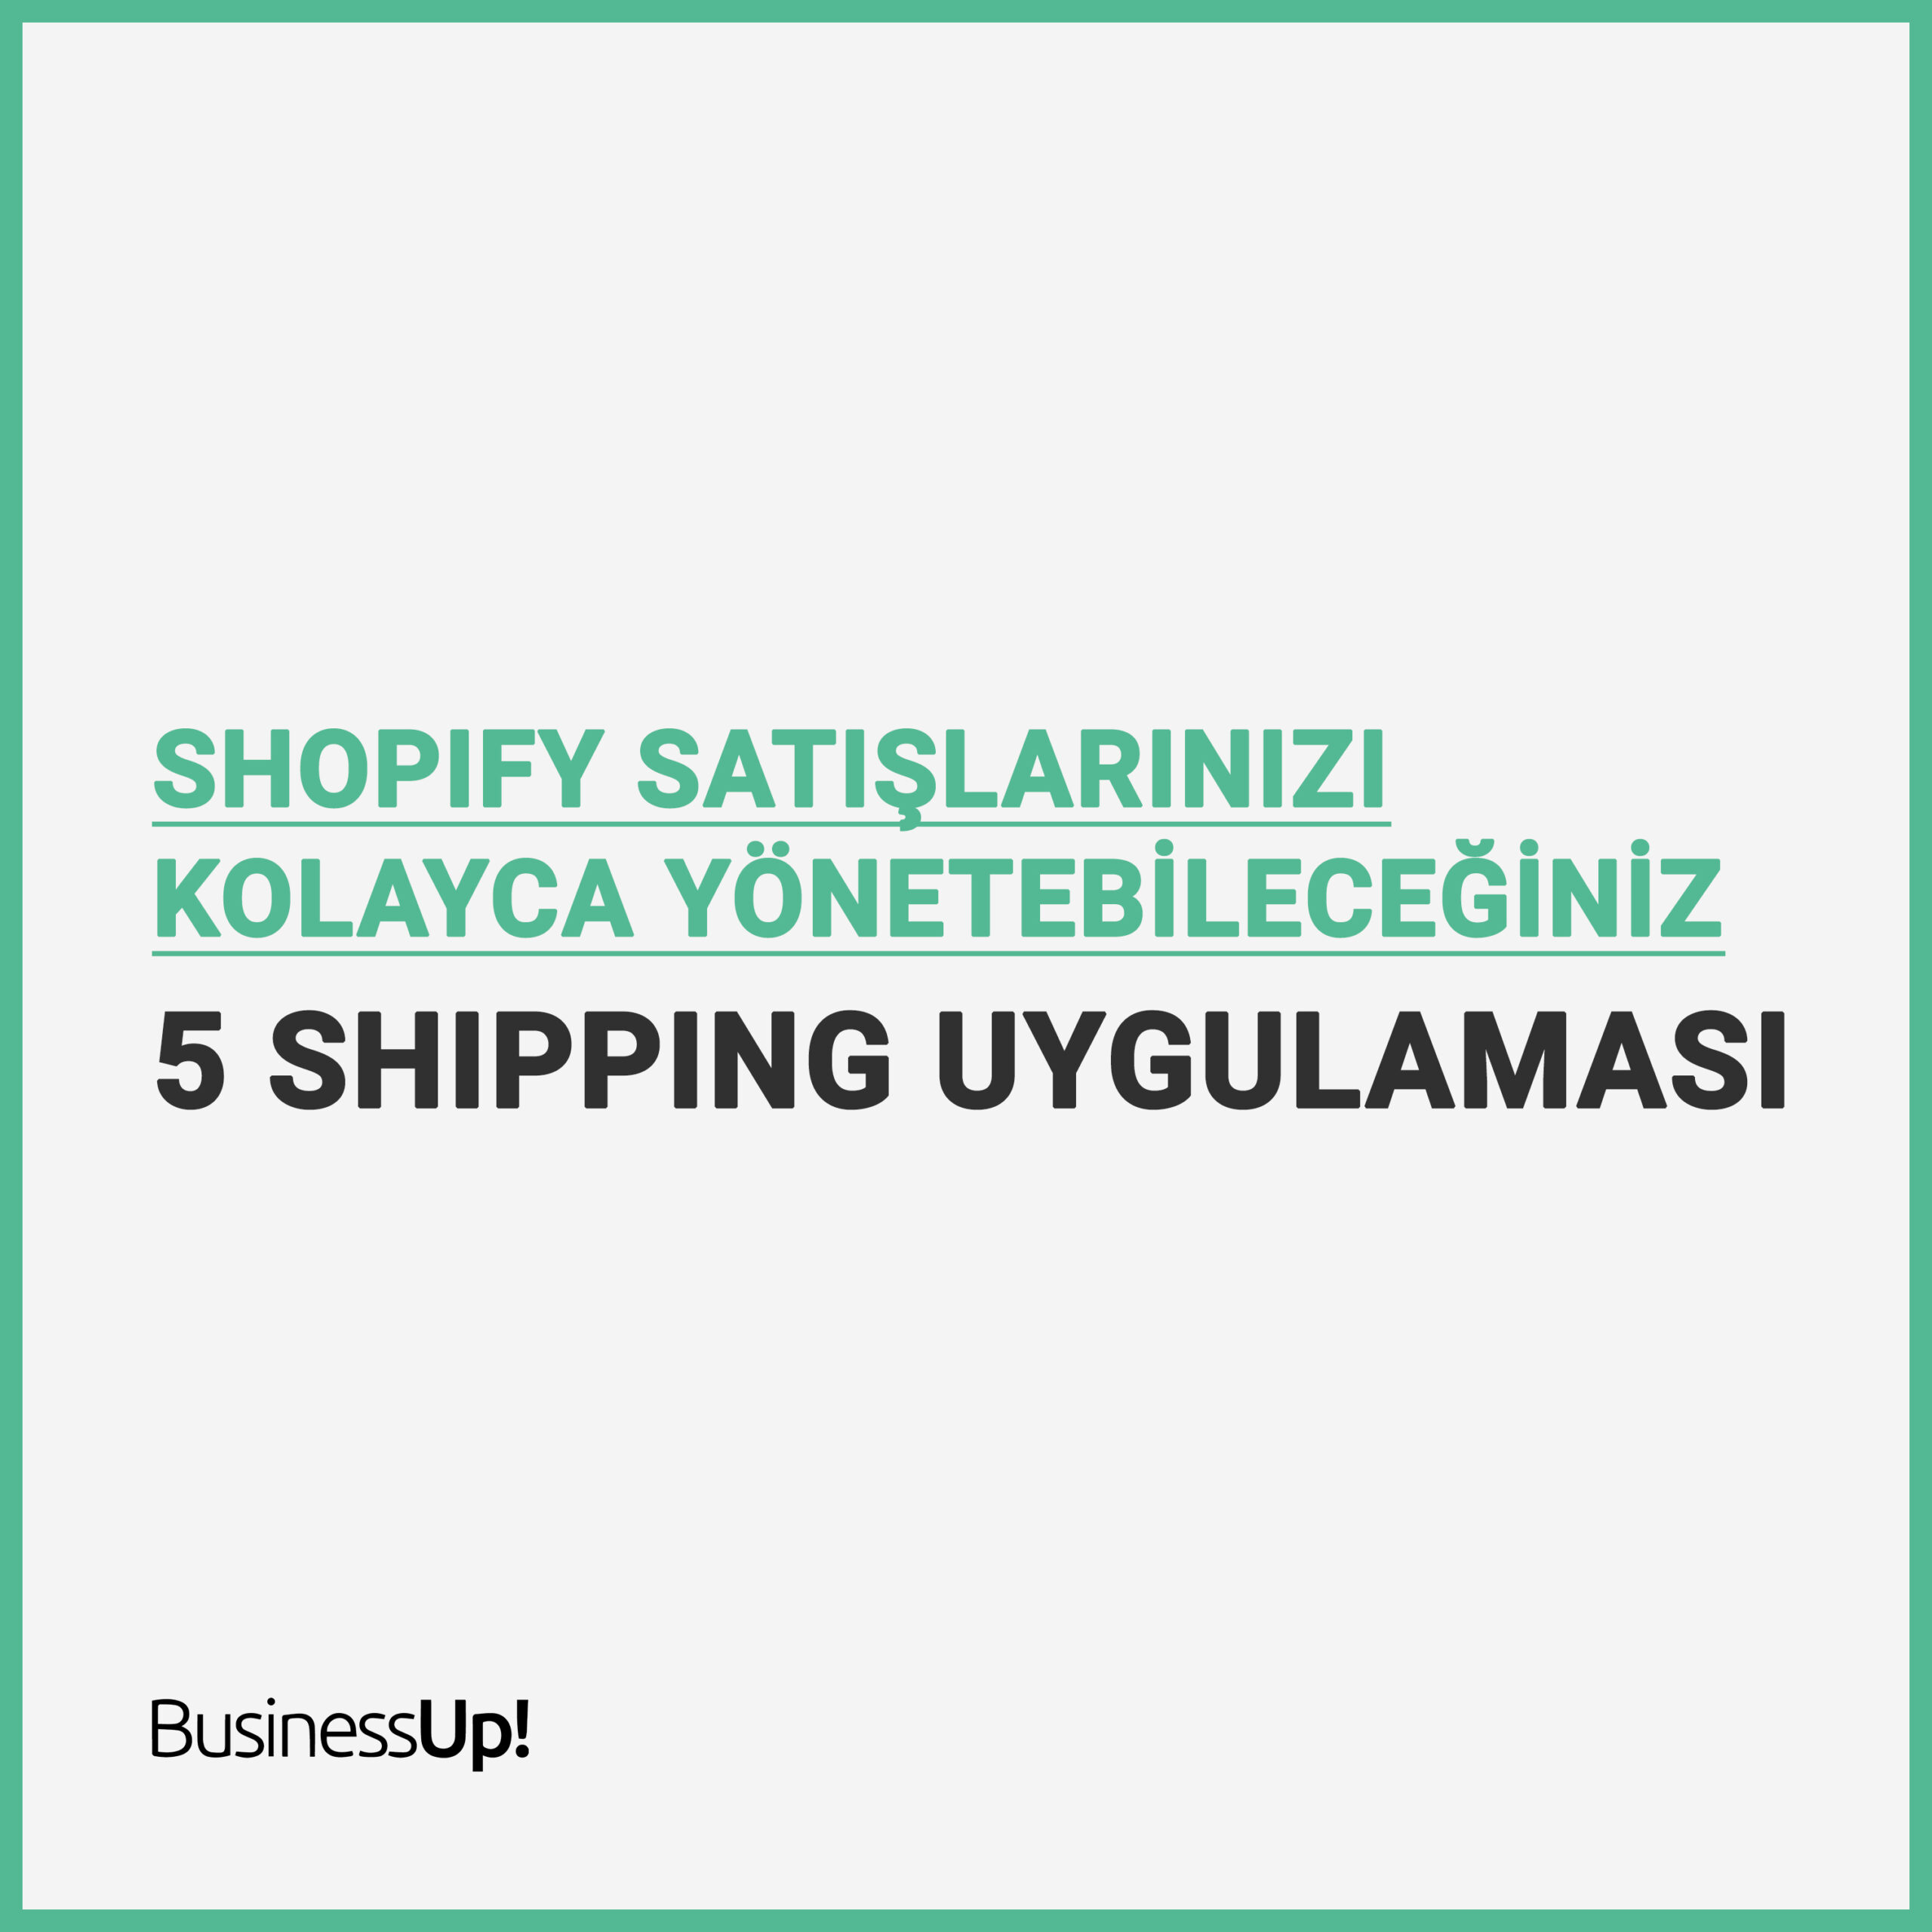 Shopify shipping uygulaması